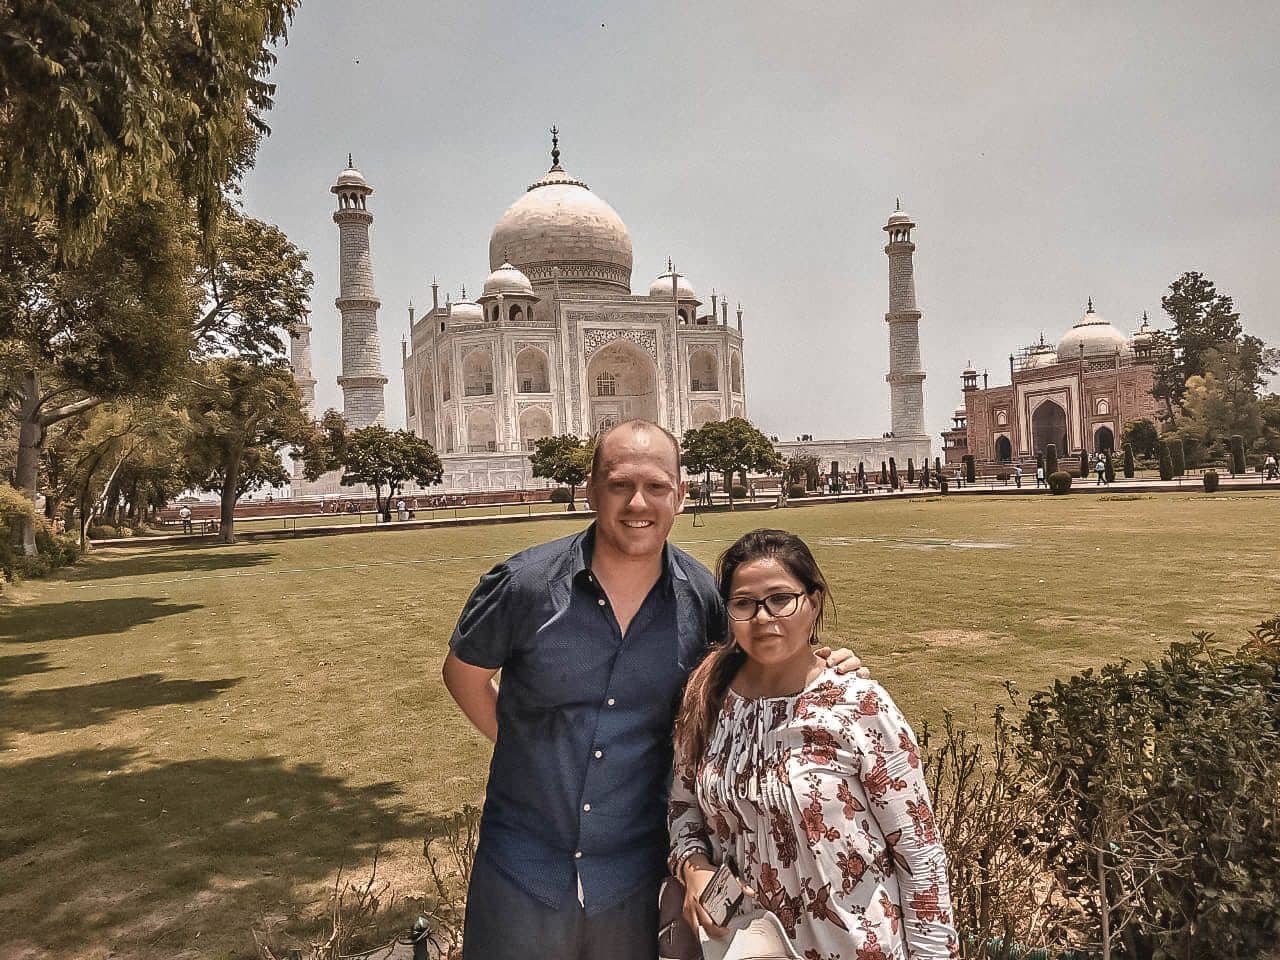 A quiet time at the Taj Mahal